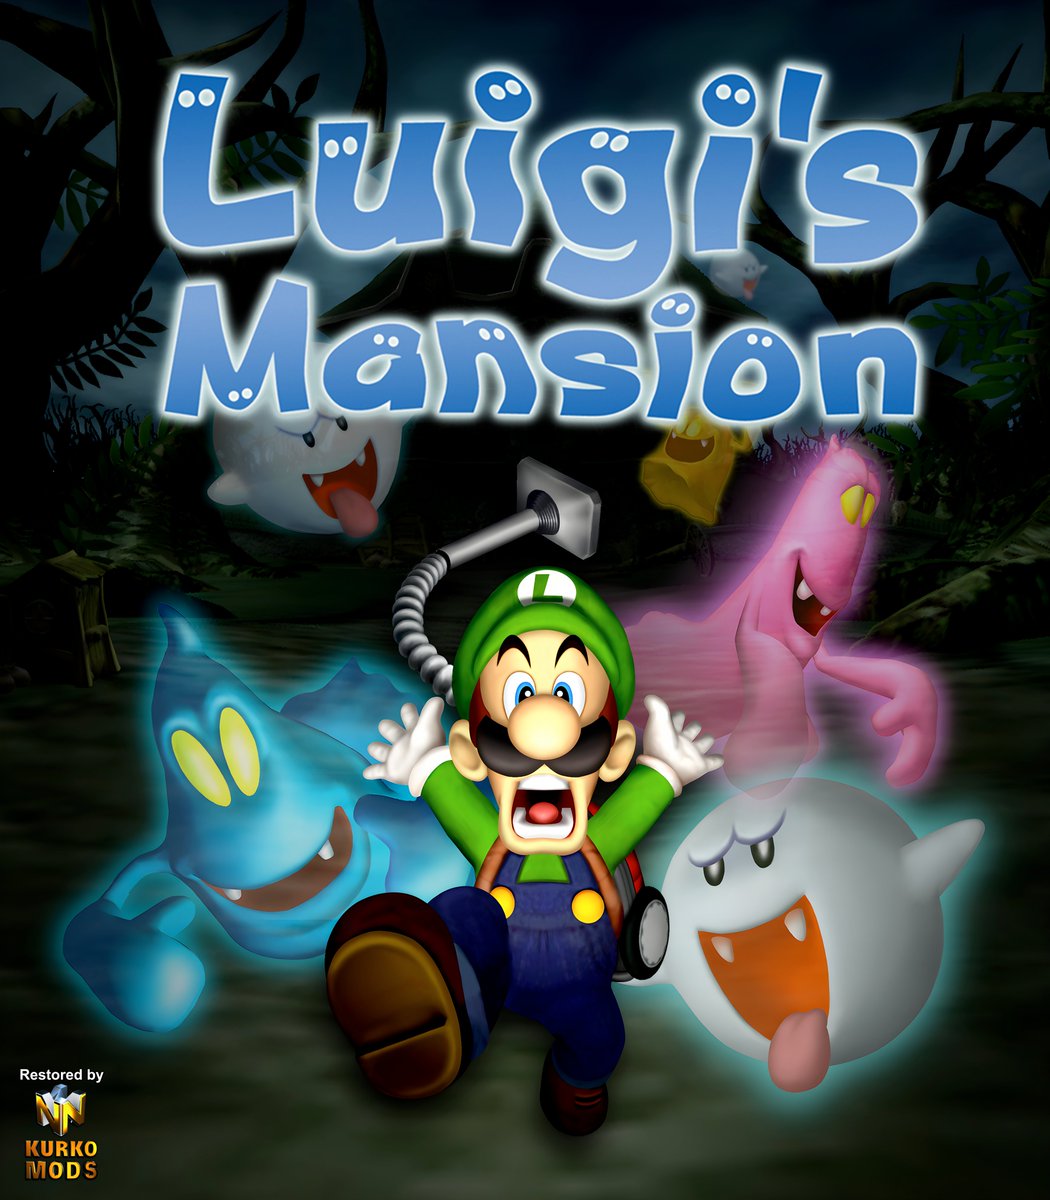 Super Mario 64 or Luigi's Mansion?